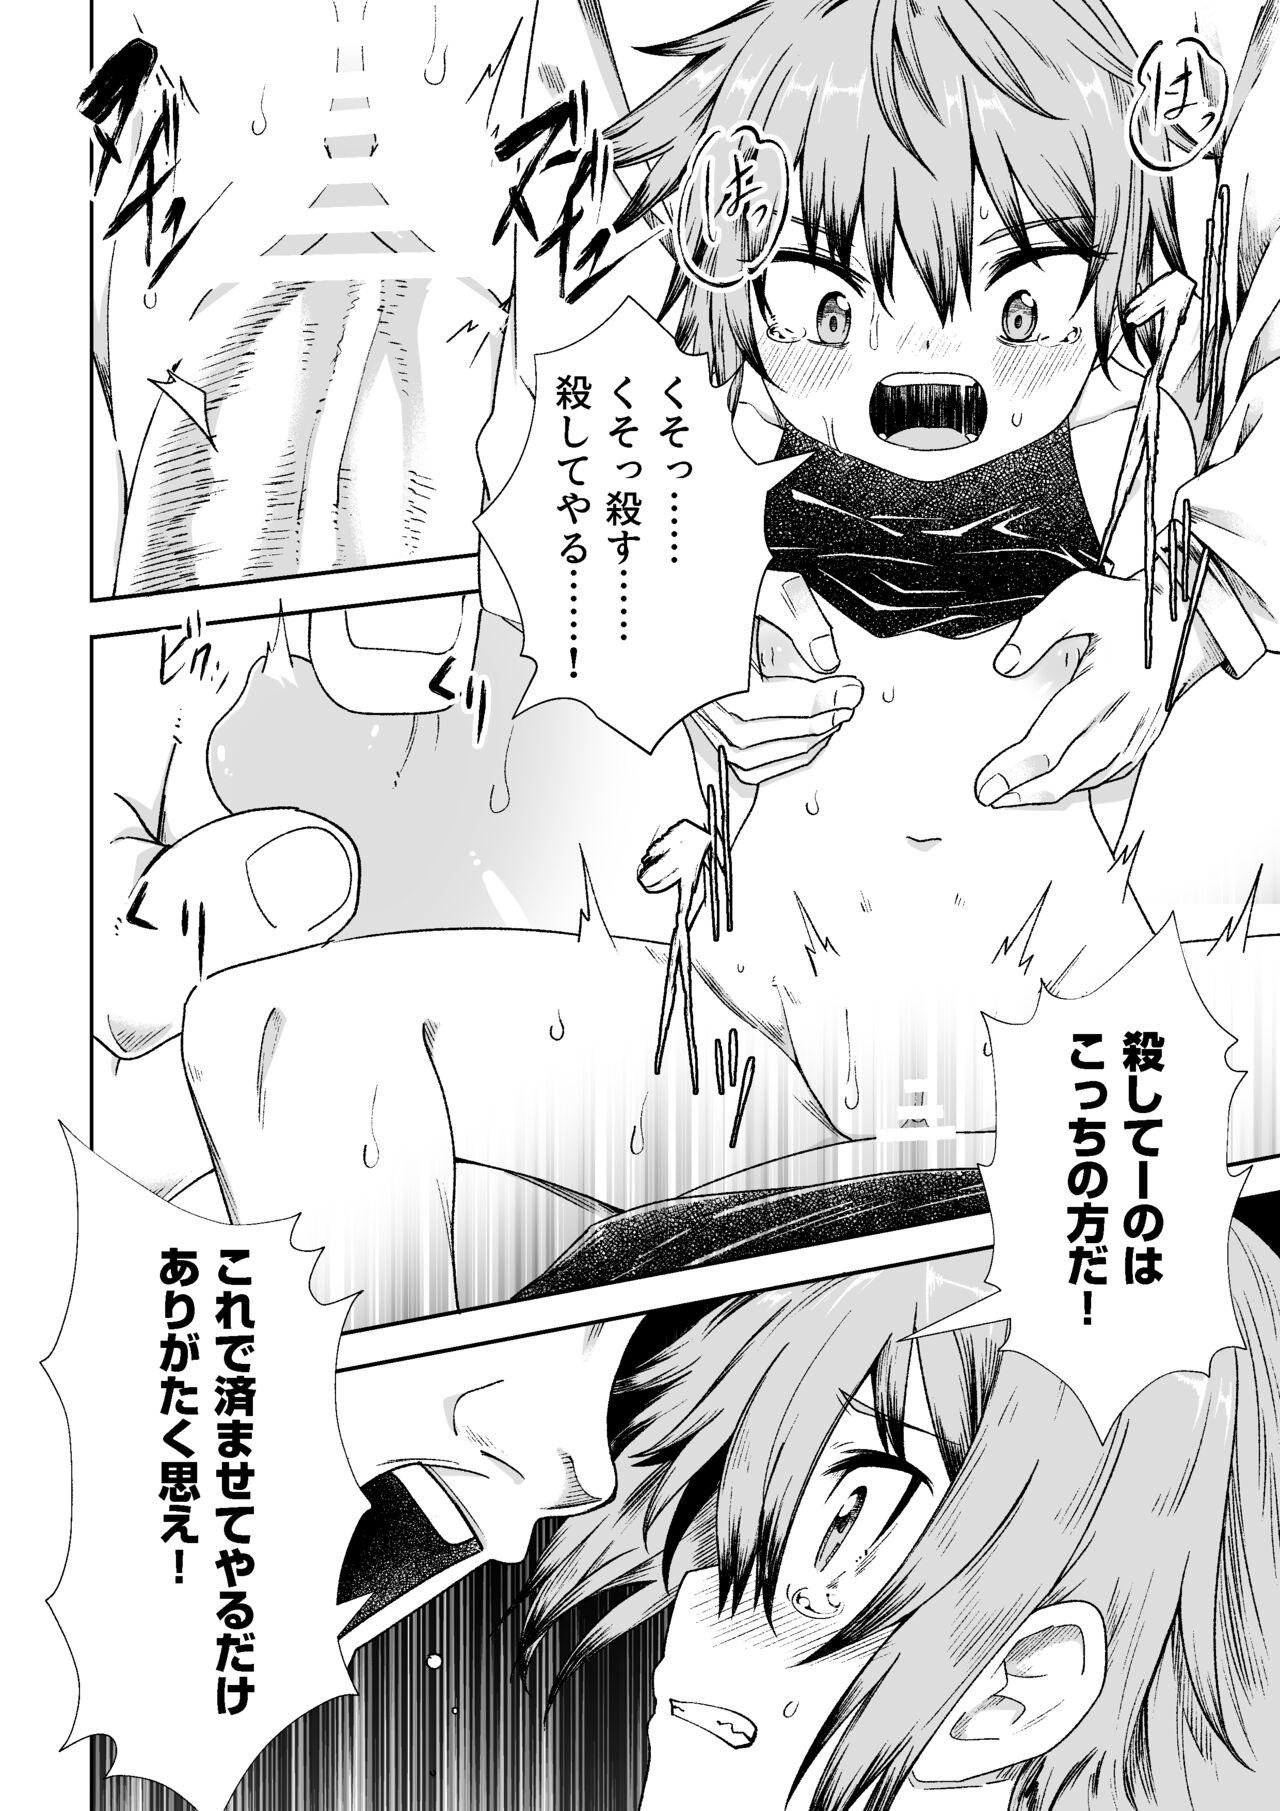 Cavalgando Nusubito no Shoujo - Original Tiny Titties - Page 11